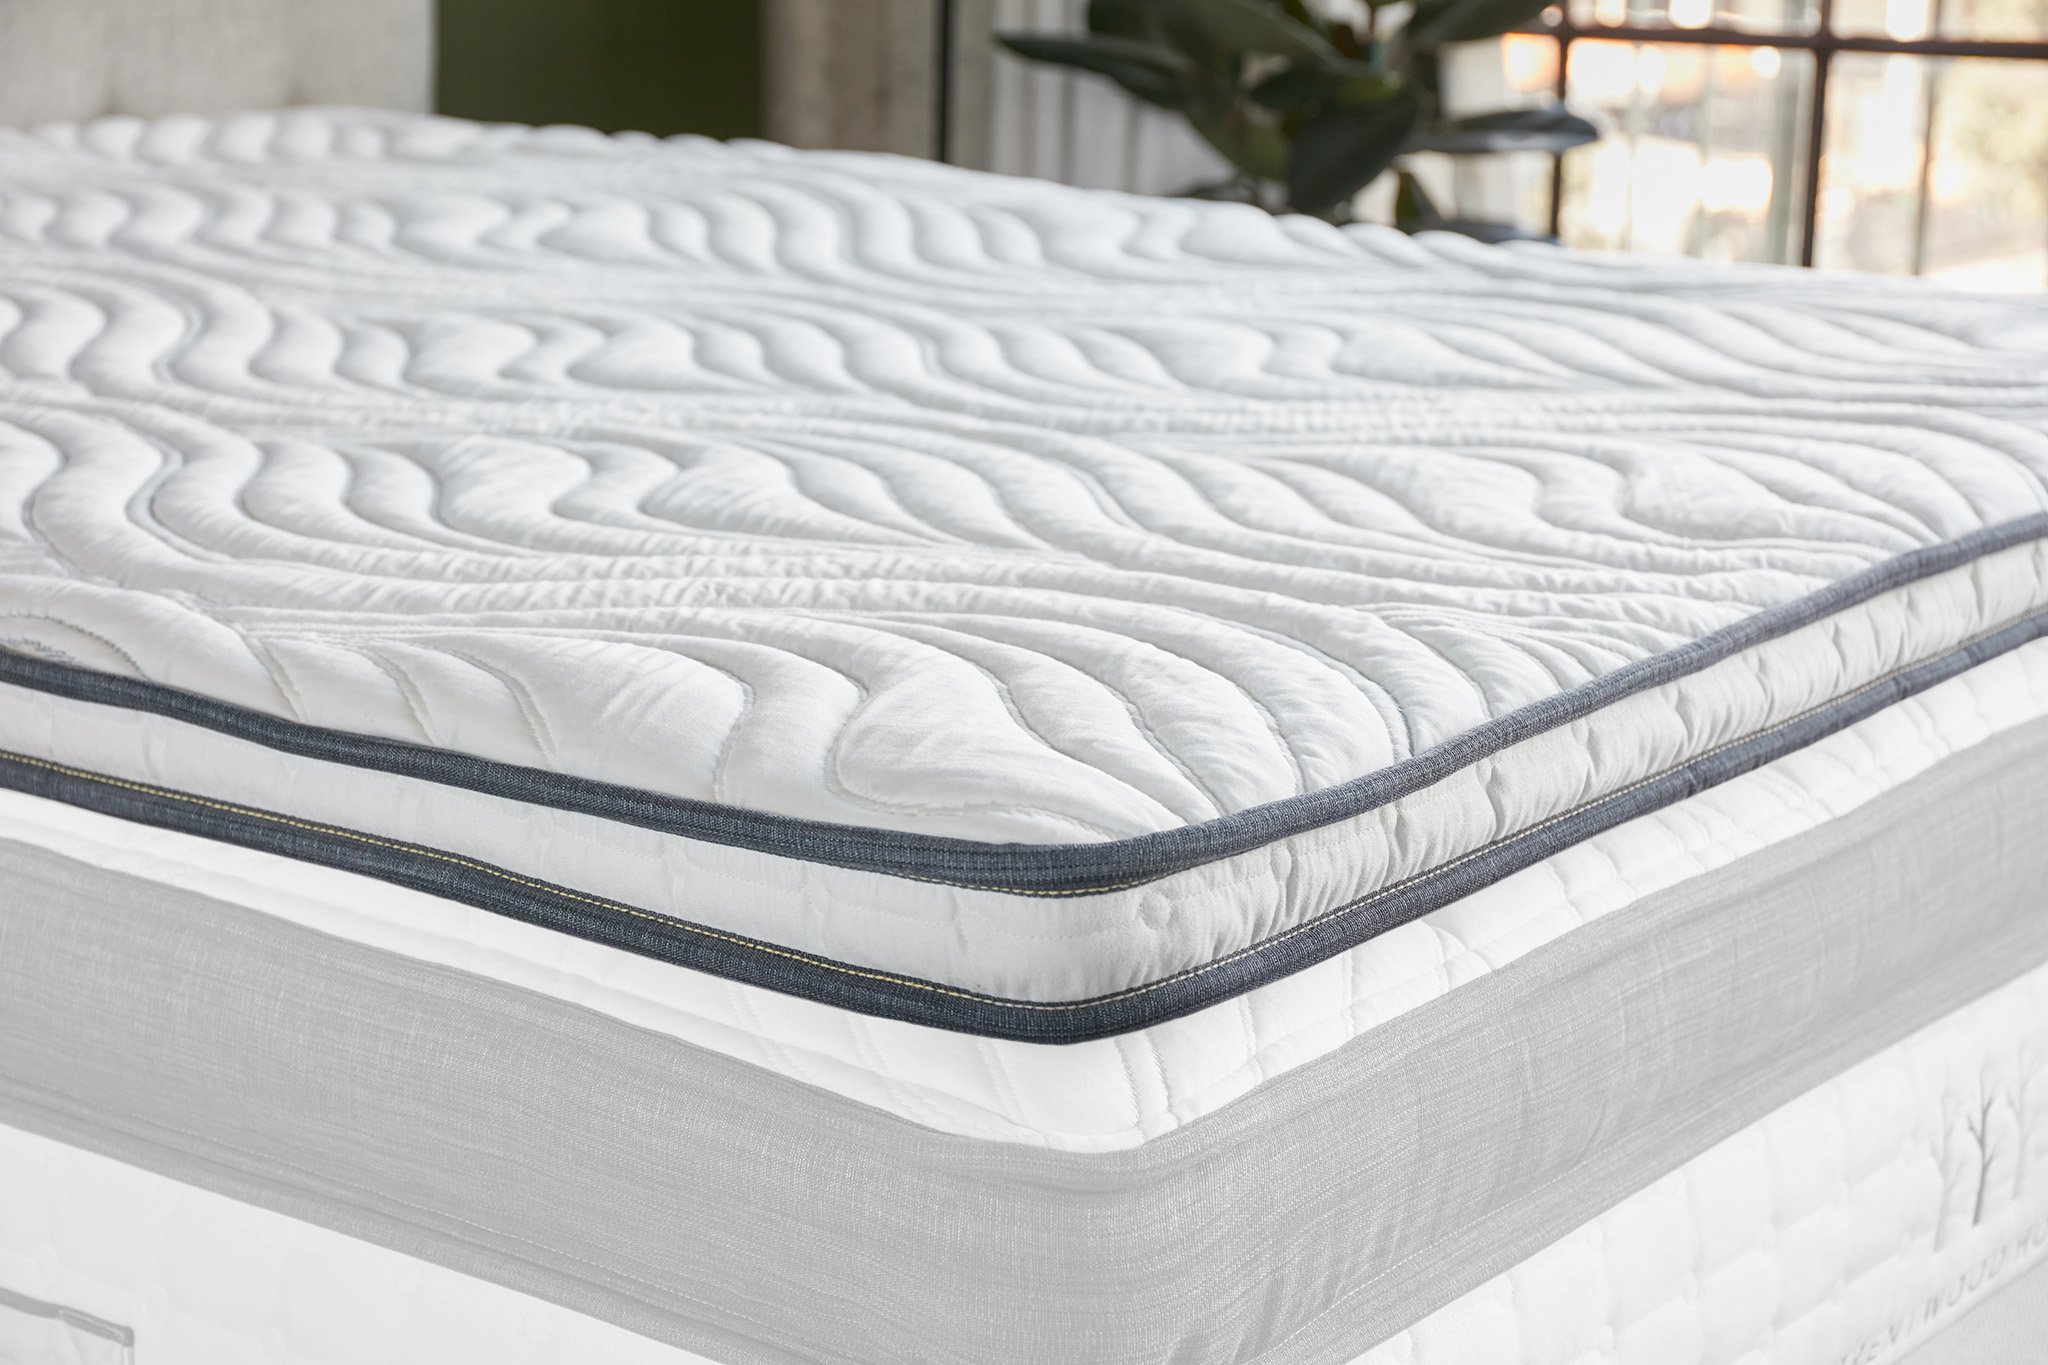 4 memory foam mattress topper by lucid